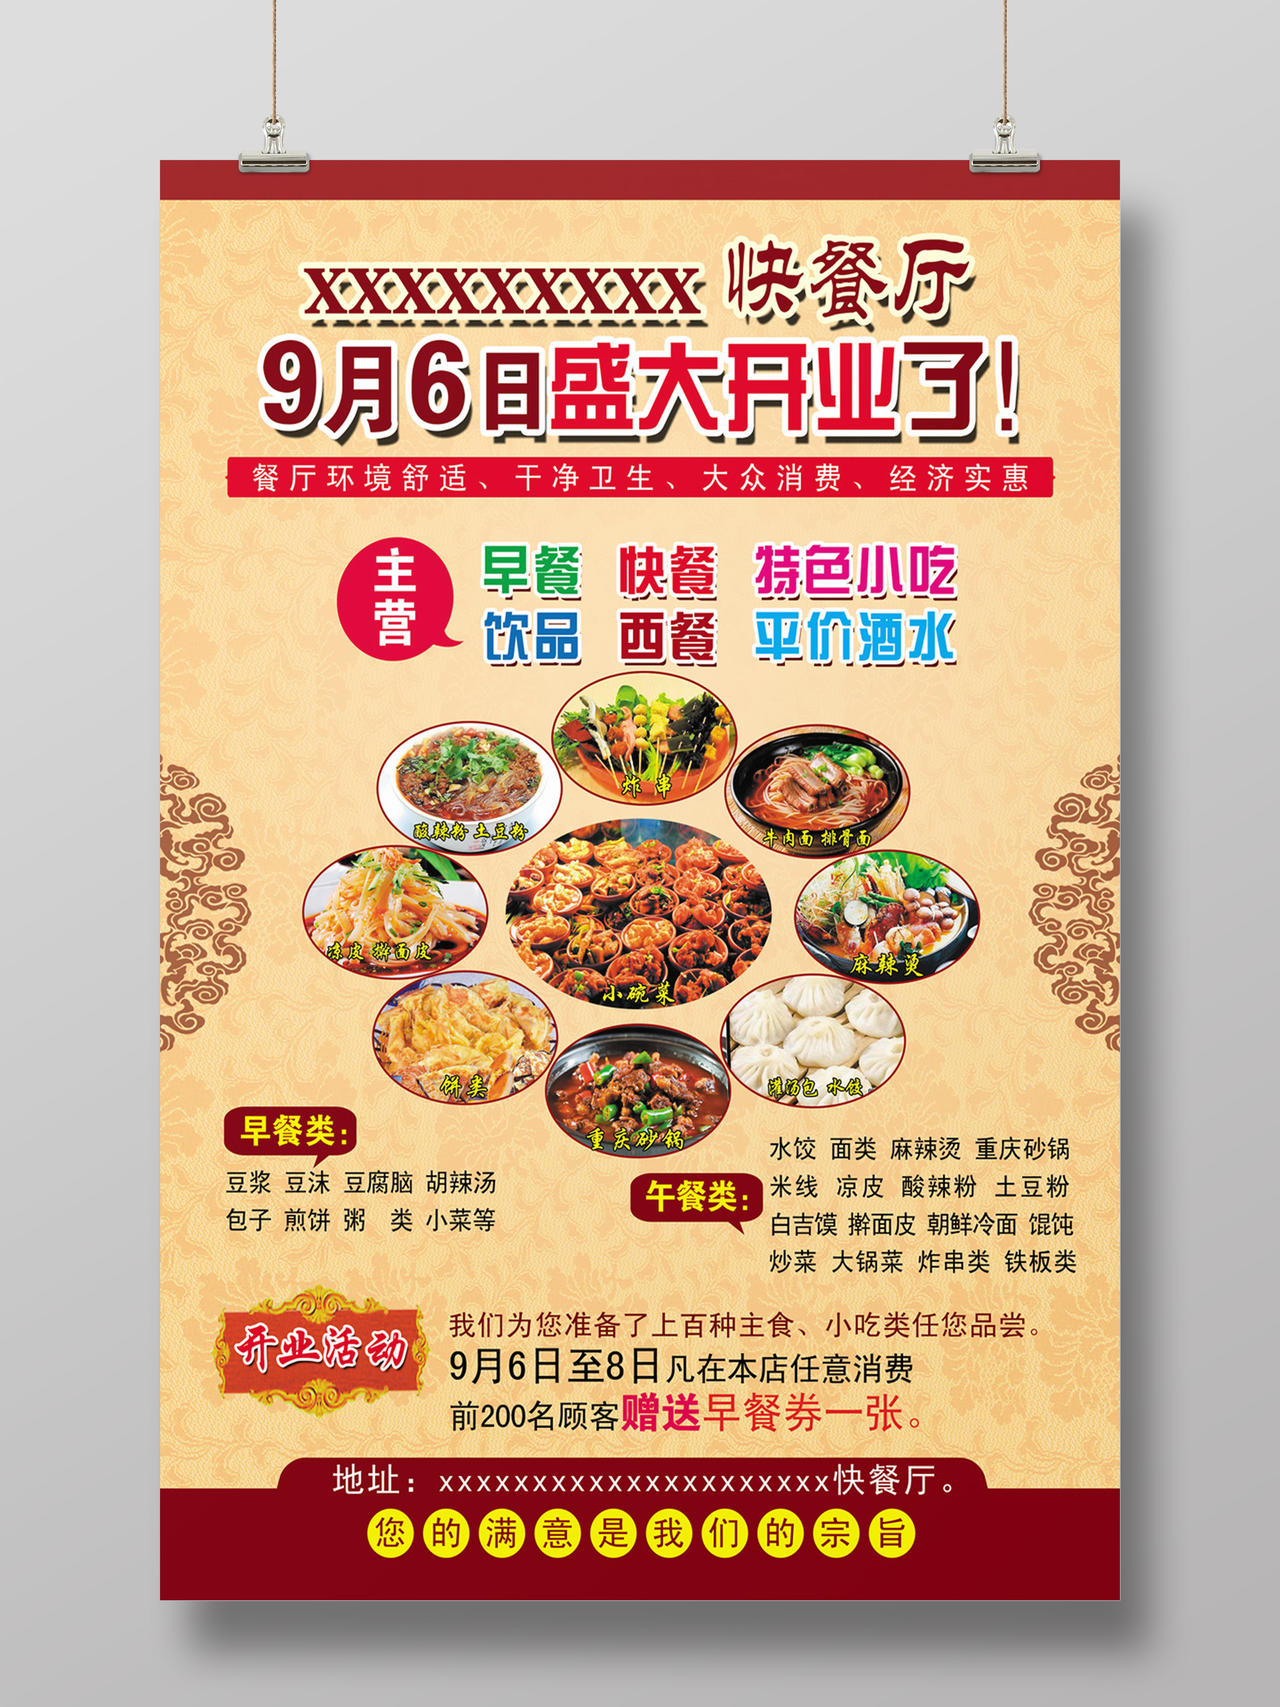 中式快餐厅盛大开业餐厅开业海报